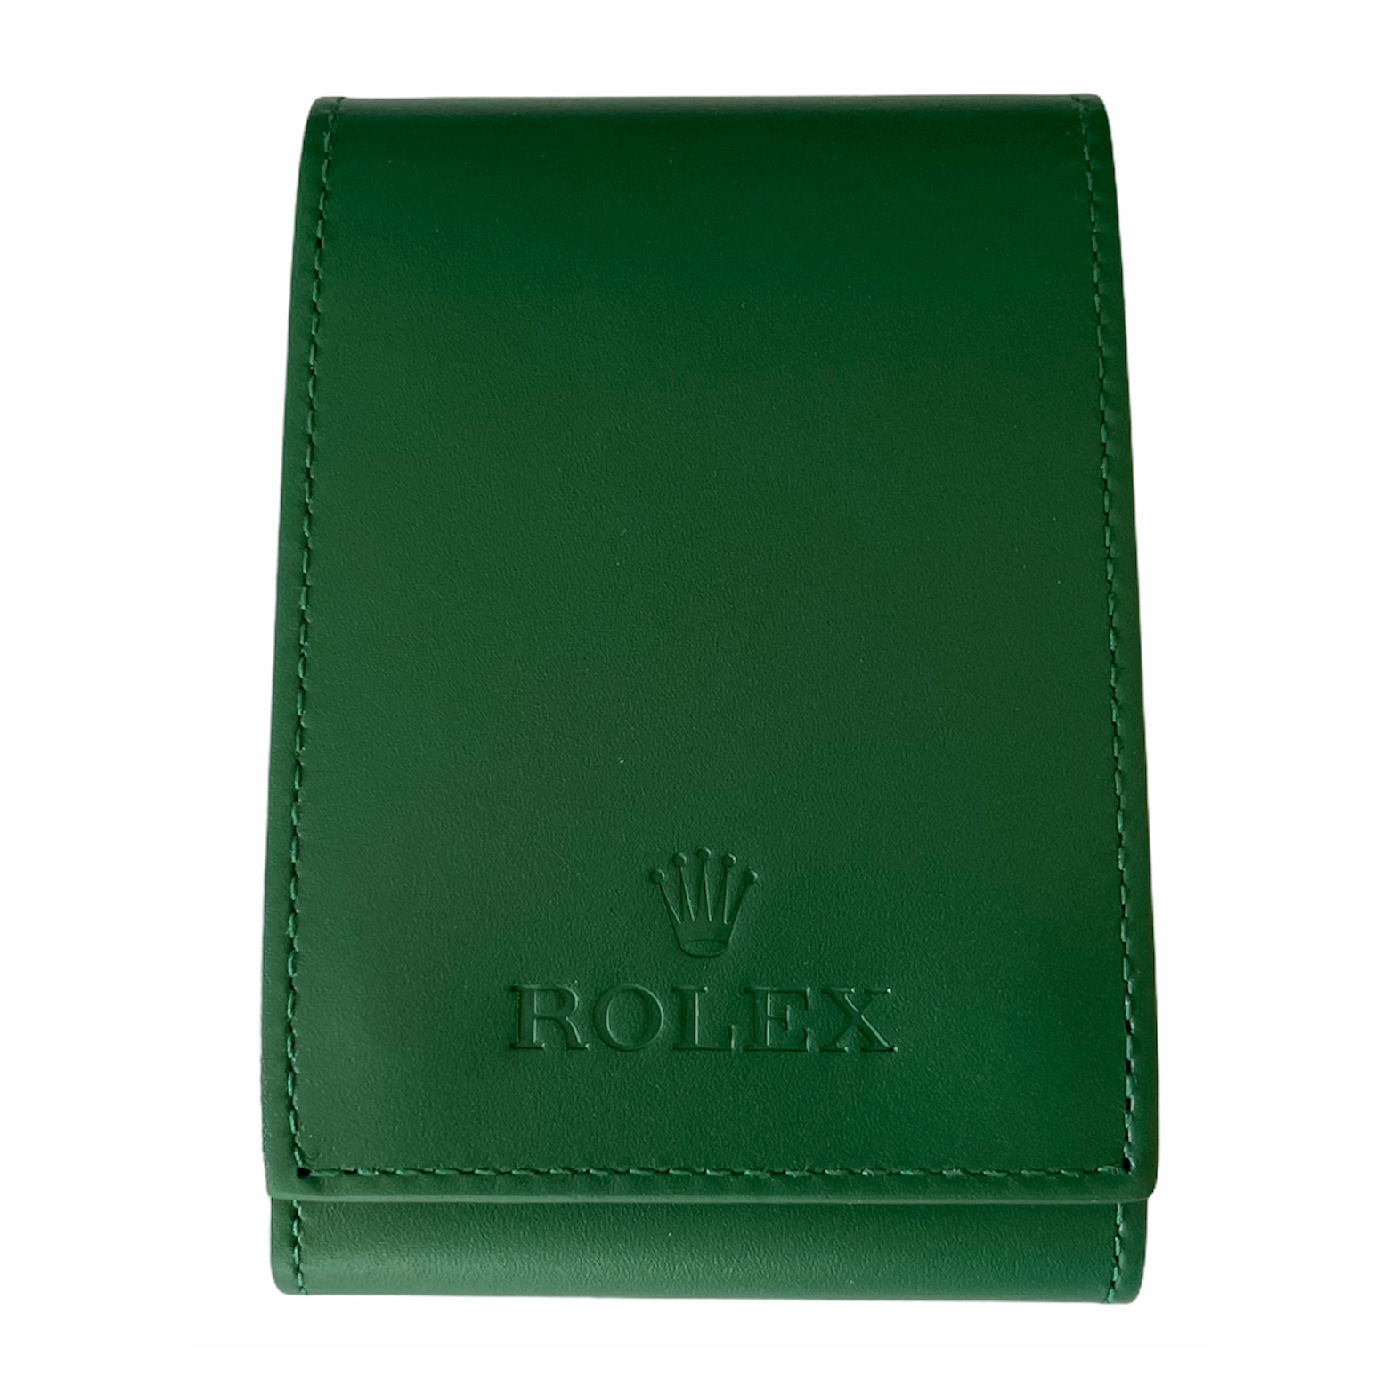 Meet the Green Rolex Trifecta - PurseBop